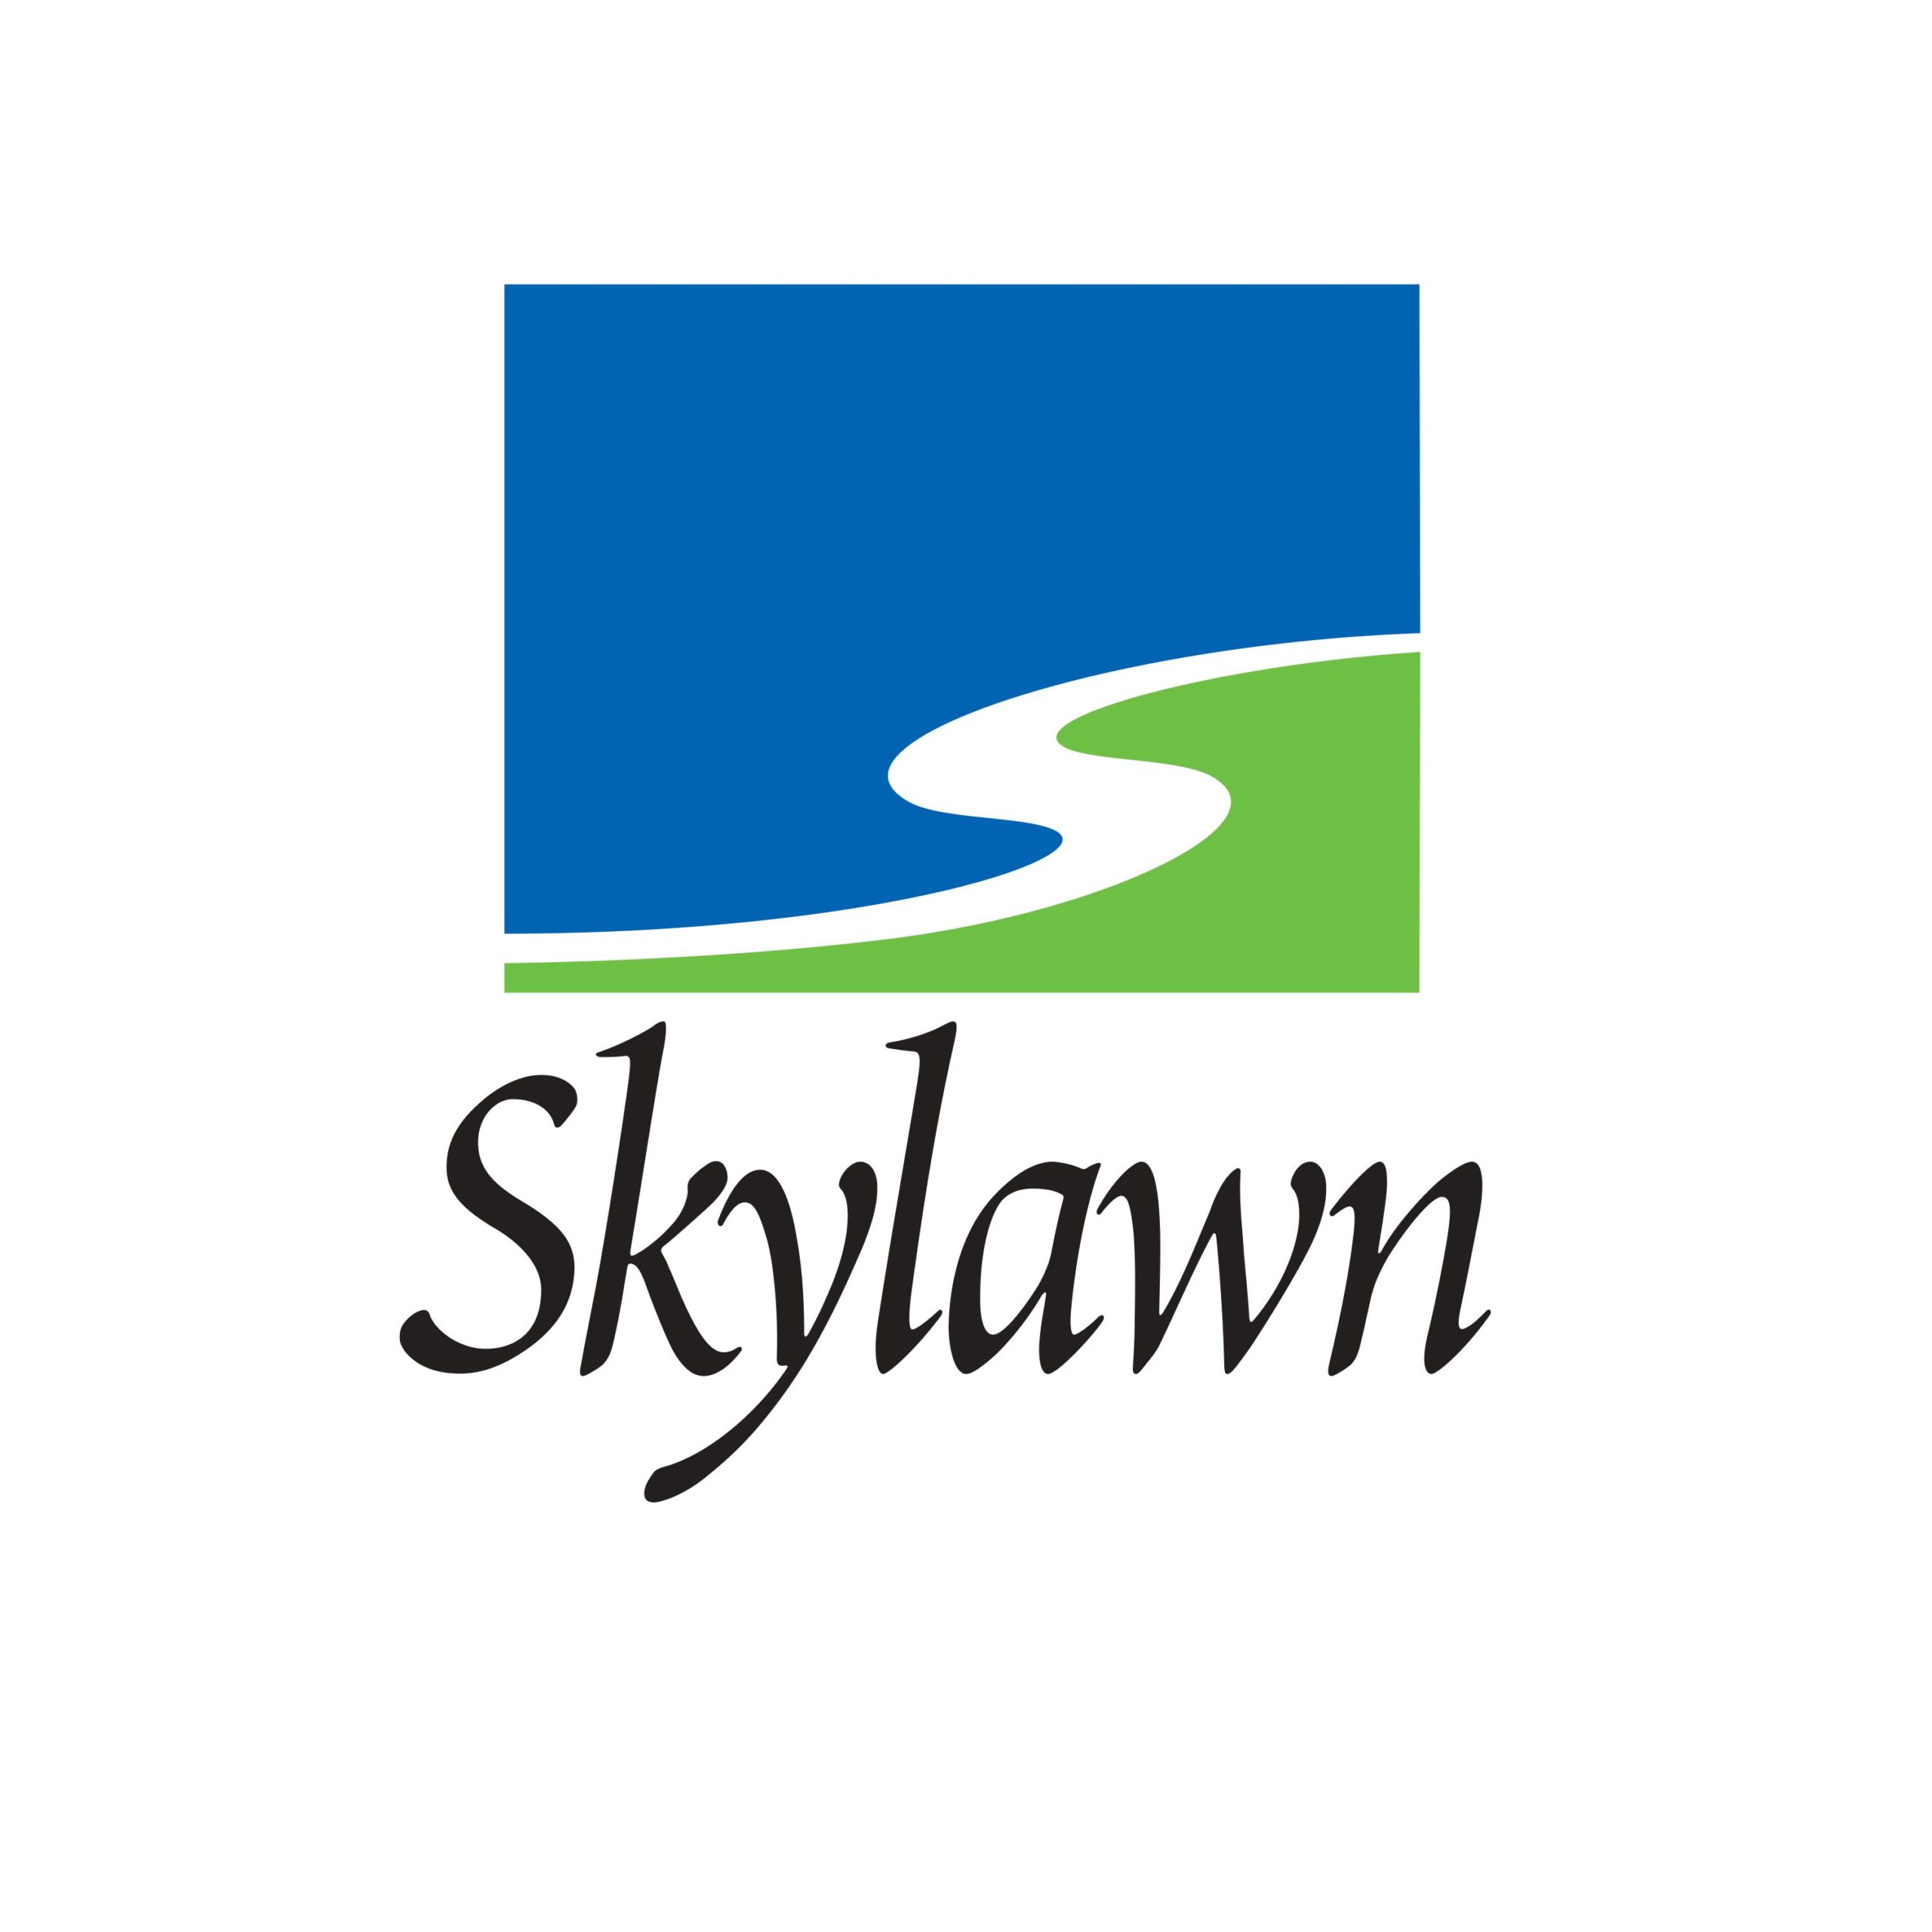 Skylawn